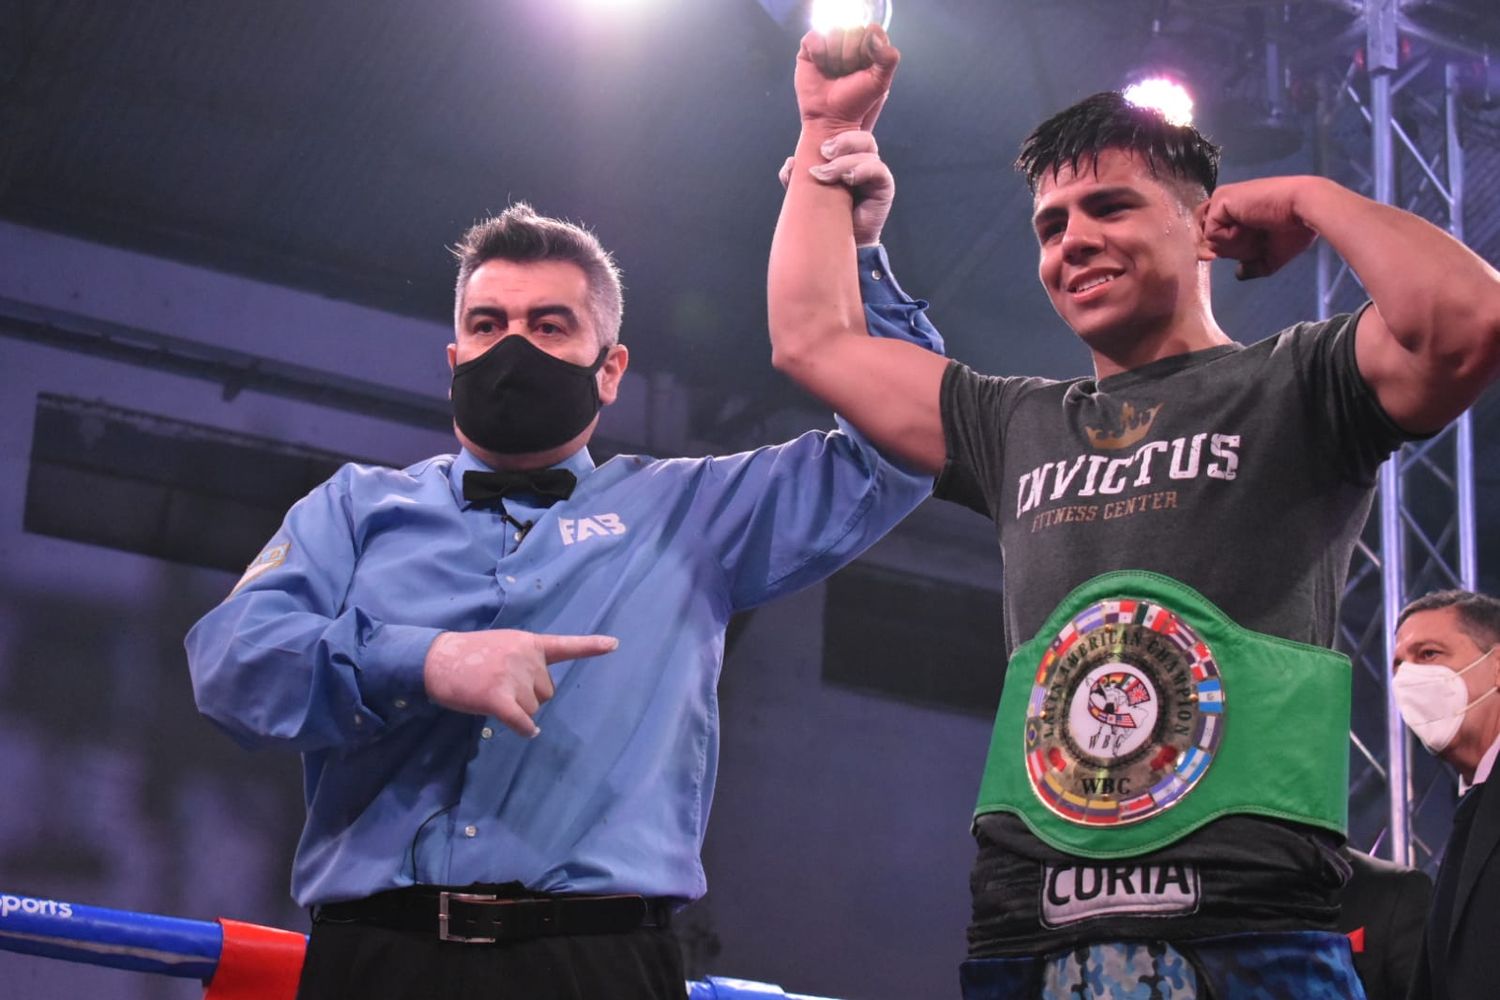 El gimnasio de Paraná vibró con una pelea de alto vuelo que consagró campeón latino a Rodrigo Coria